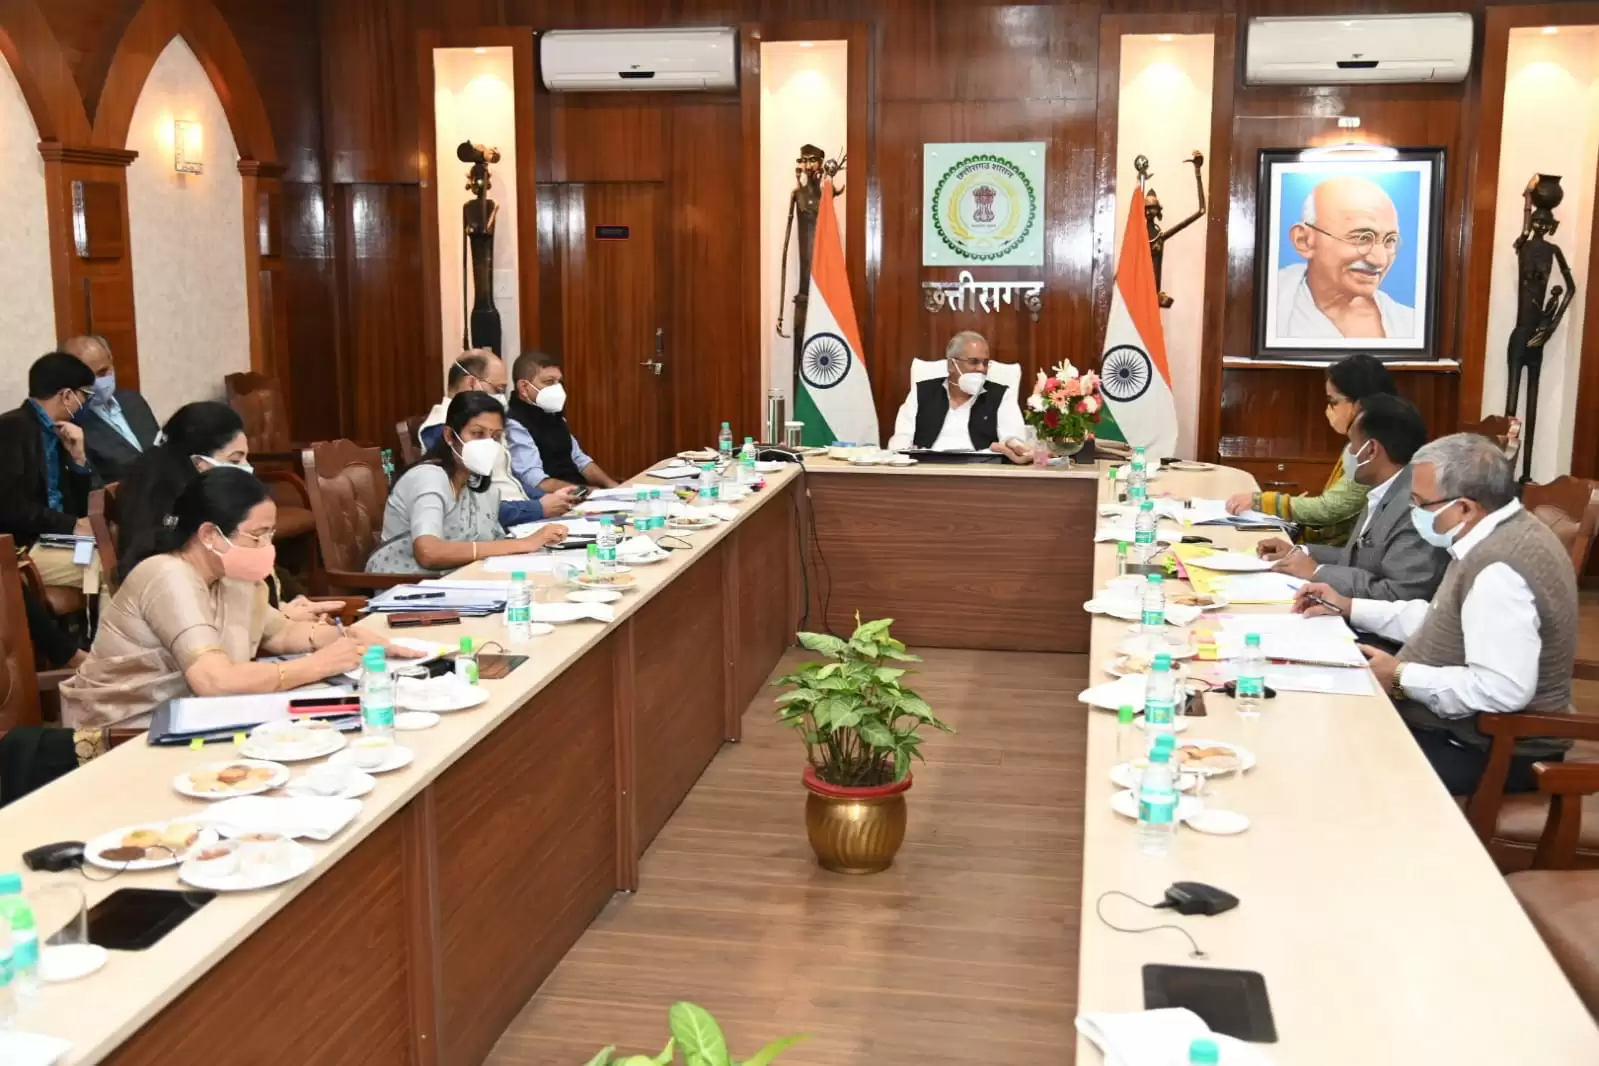 CM भूपेश बघेल ने लोक स्वास्थ्य यांत्रिकी और ग्रामोद्योग के विभागों  की बजट तैयारियों की समीक्षा